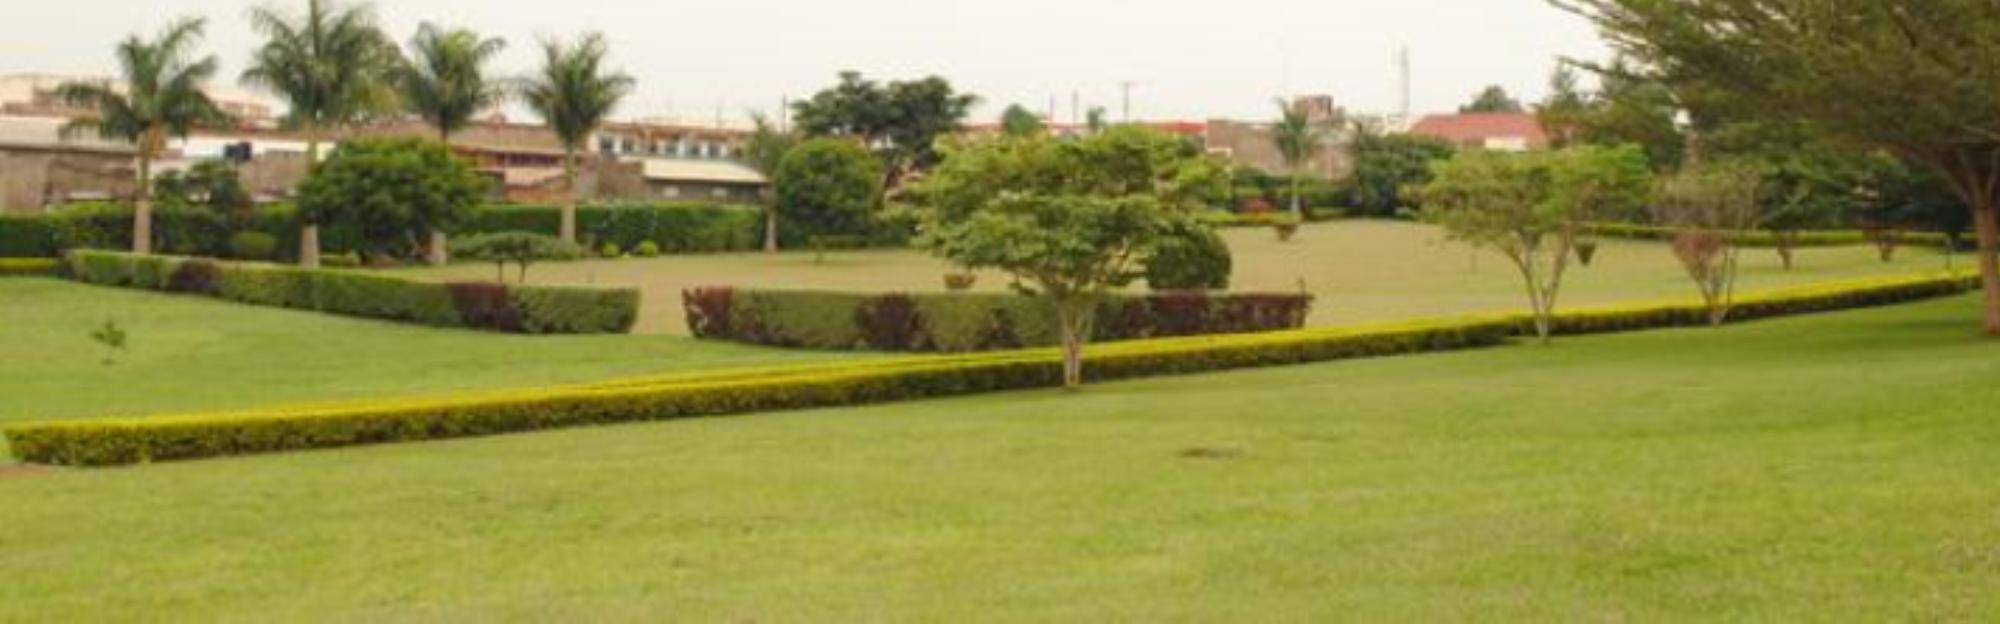 Masindi Kolping Hotel Gardens